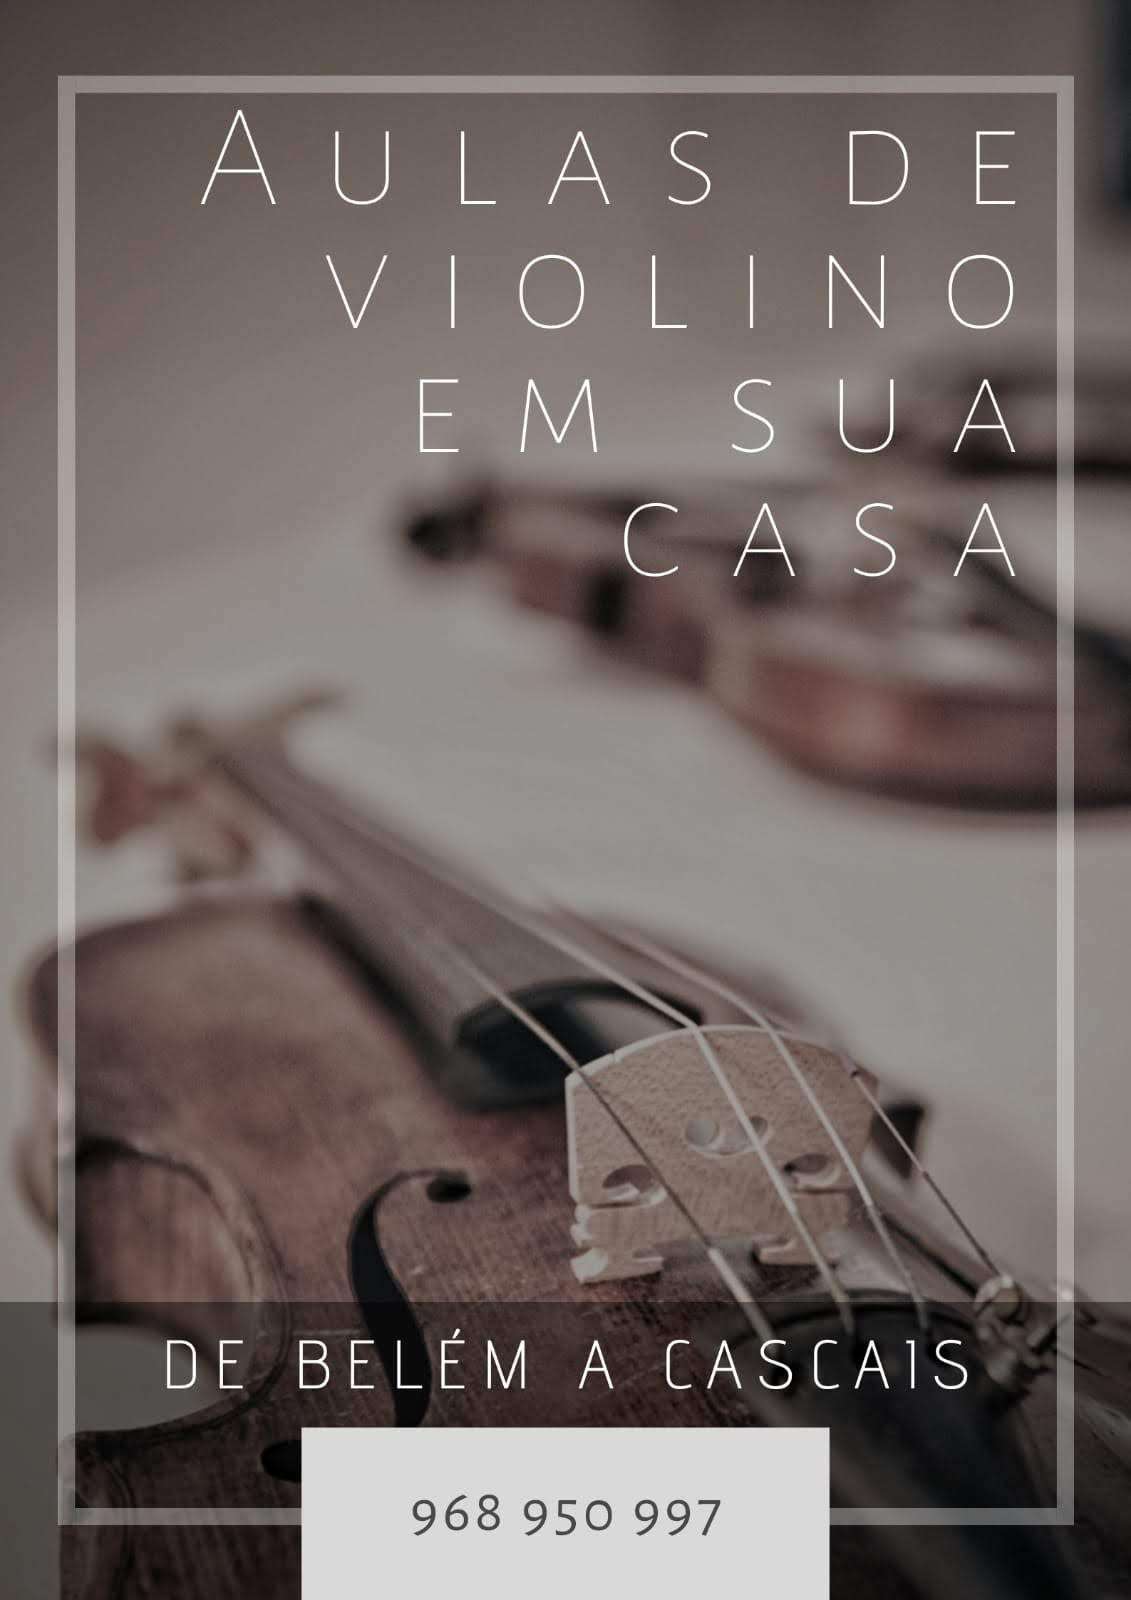 Silvia Monteiro - Cascais - Aulas de Violino